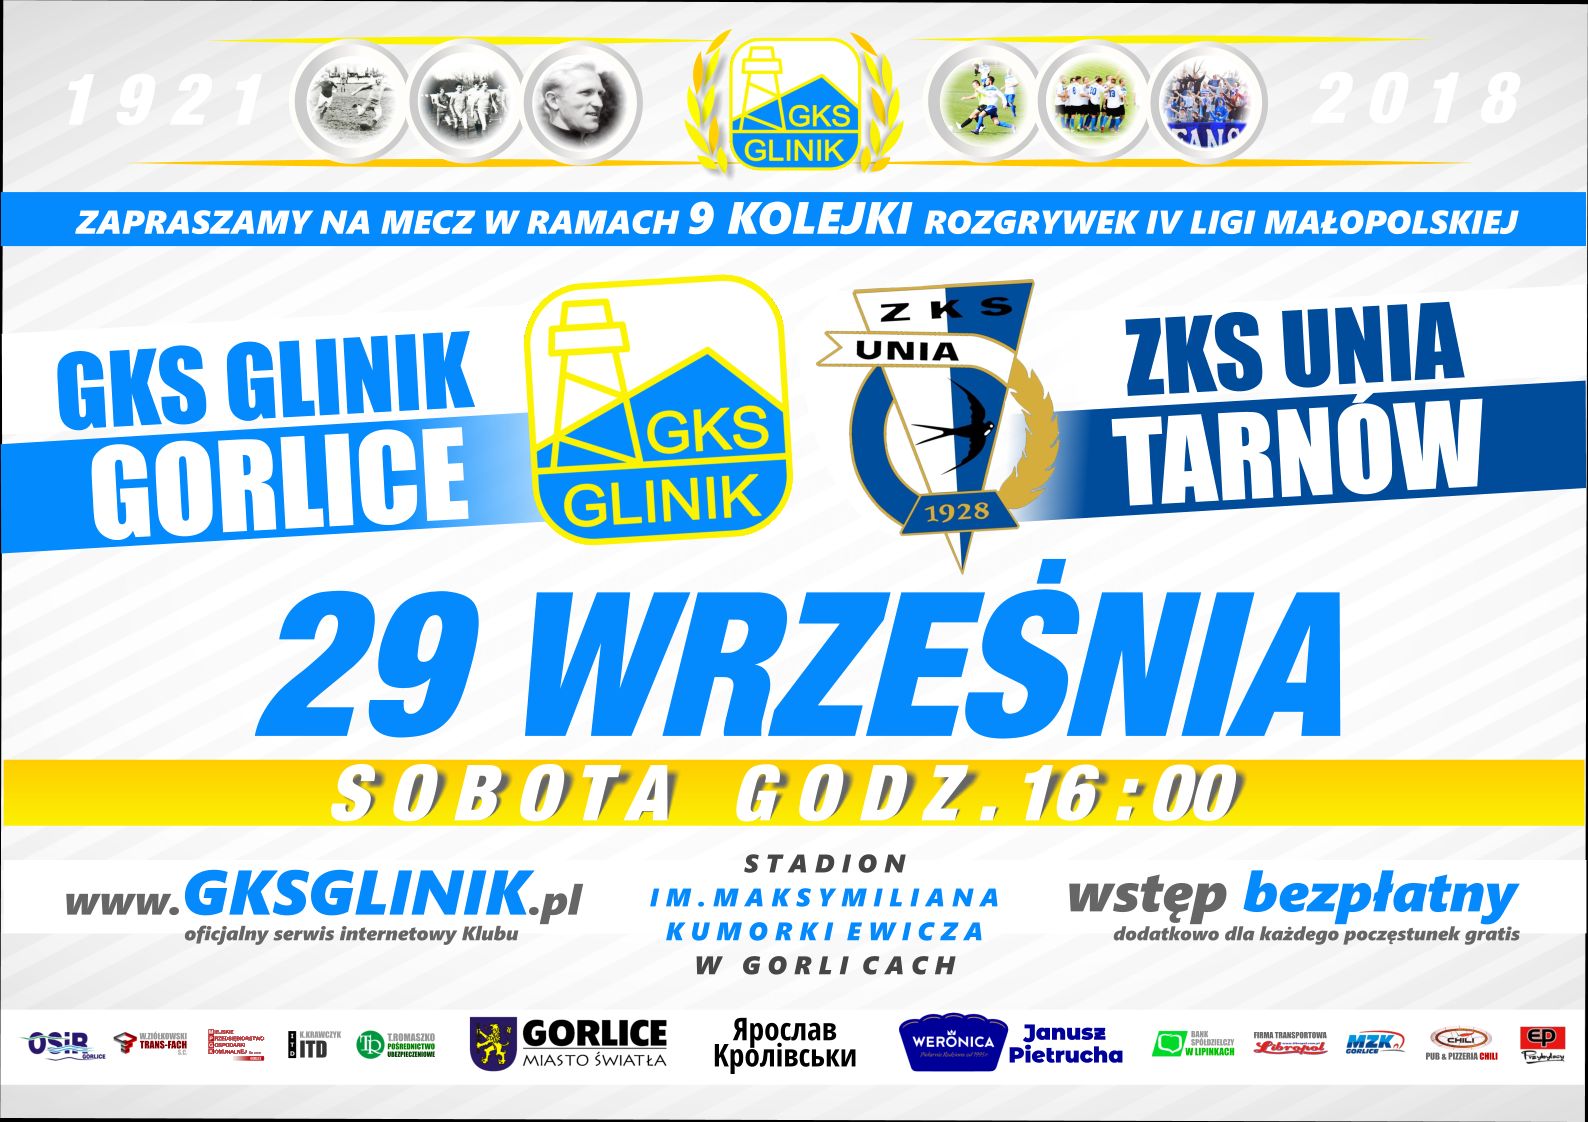 GKS Glinik Gorlice & ZKS Unia Tarnów